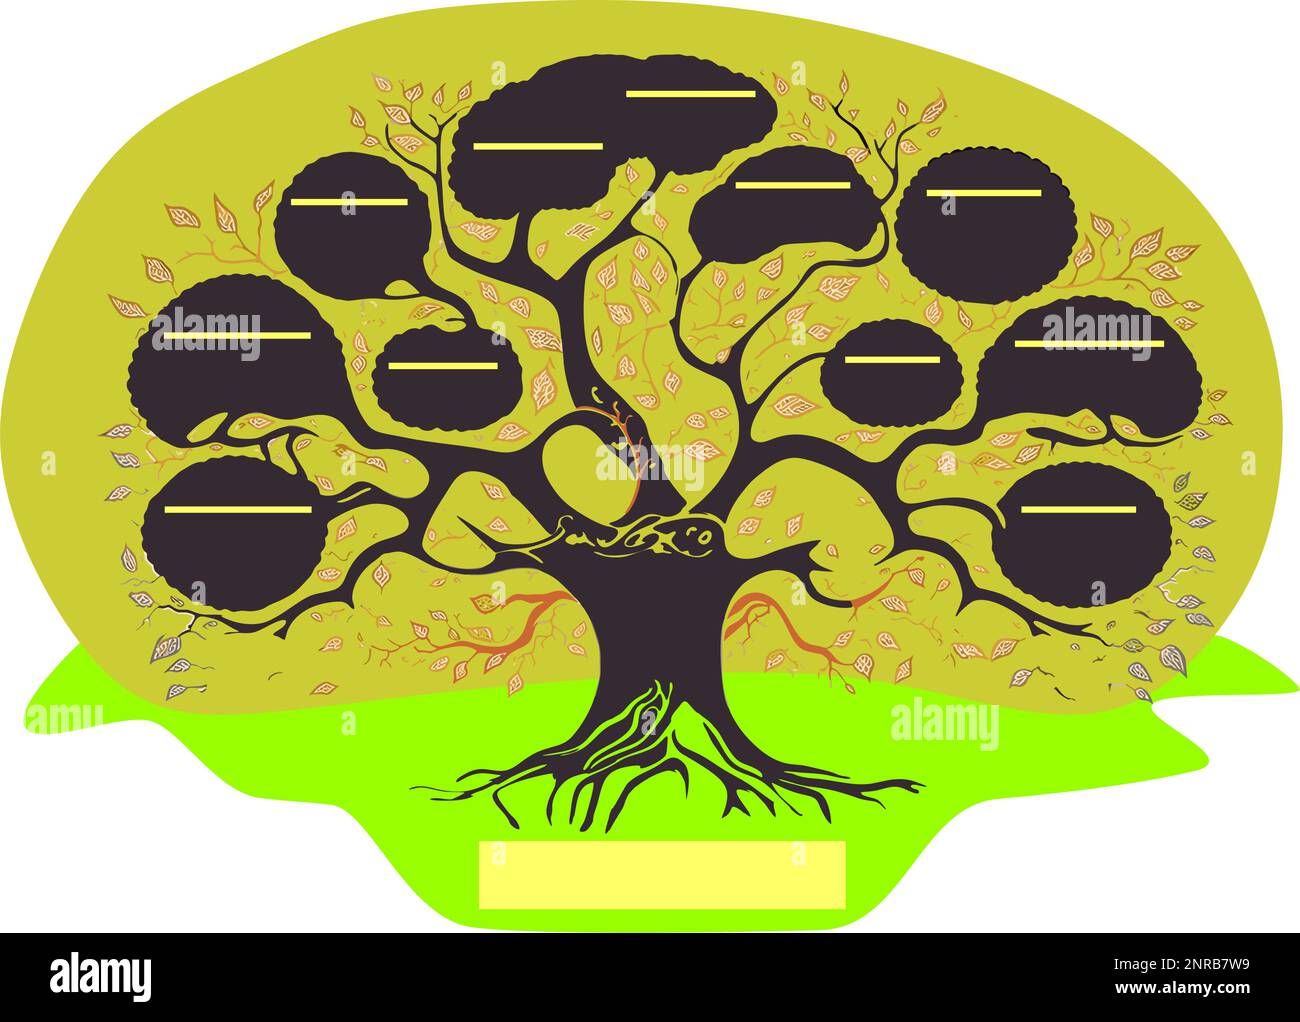 rappresentazione schematica dei legami familiari dell'albero genealogico del dipinto sotto forma di un albero simbolico condizionale Illustrazione Vettoriale